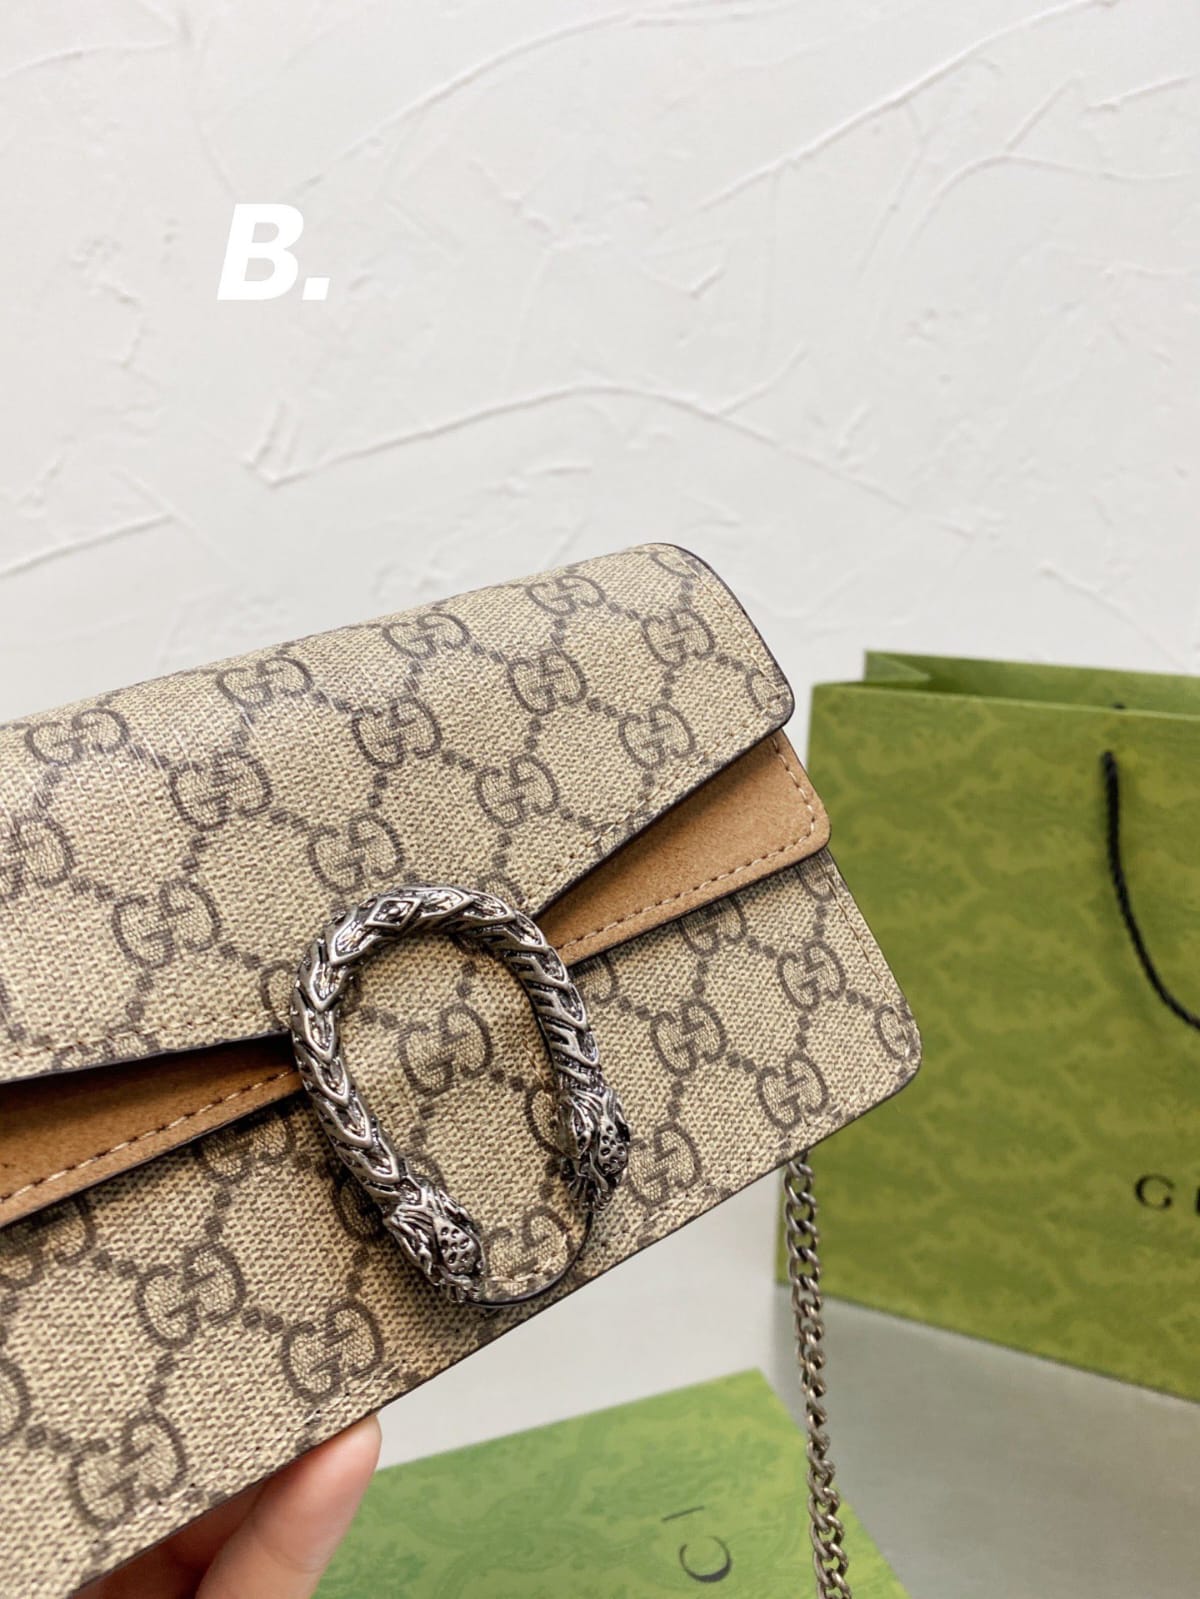 Gucci Dionysus Handbag Mini (AAA)